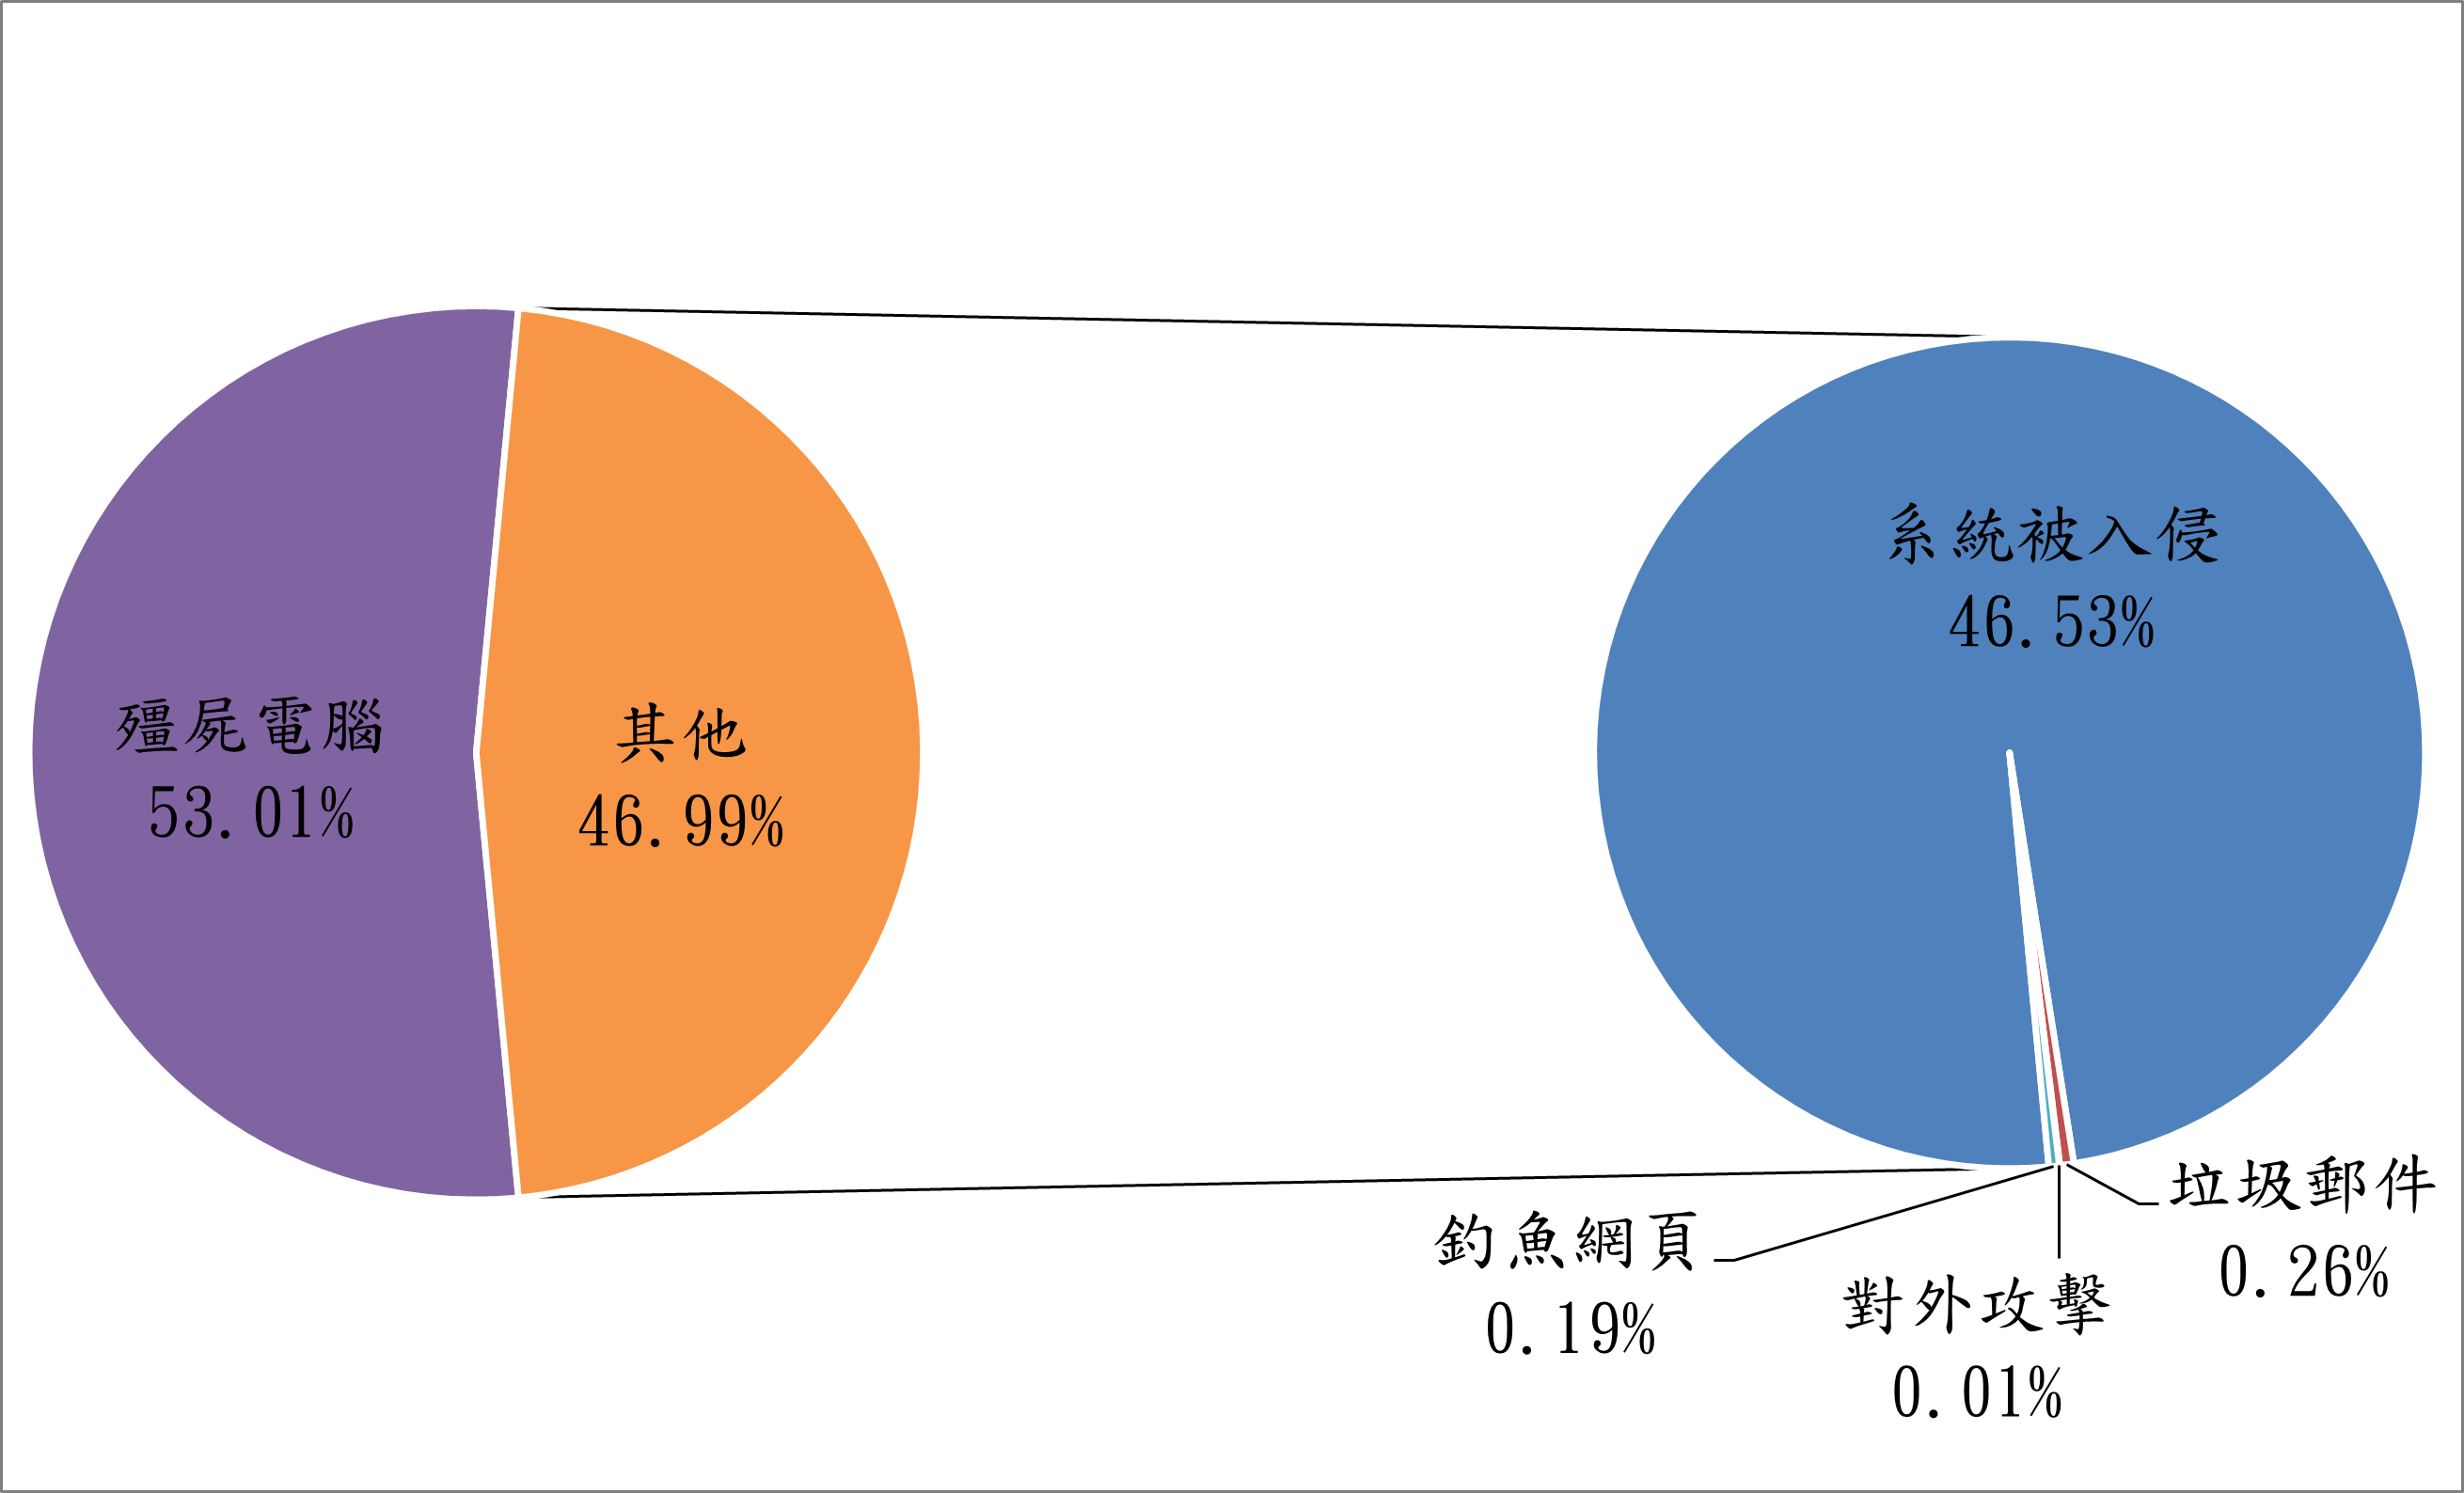 殭屍電腦53.01% 其他46.99% 系統被入侵46.53% 釣魚網頁0.19% 對外攻擊0.01% 垃圾郵件0.26%